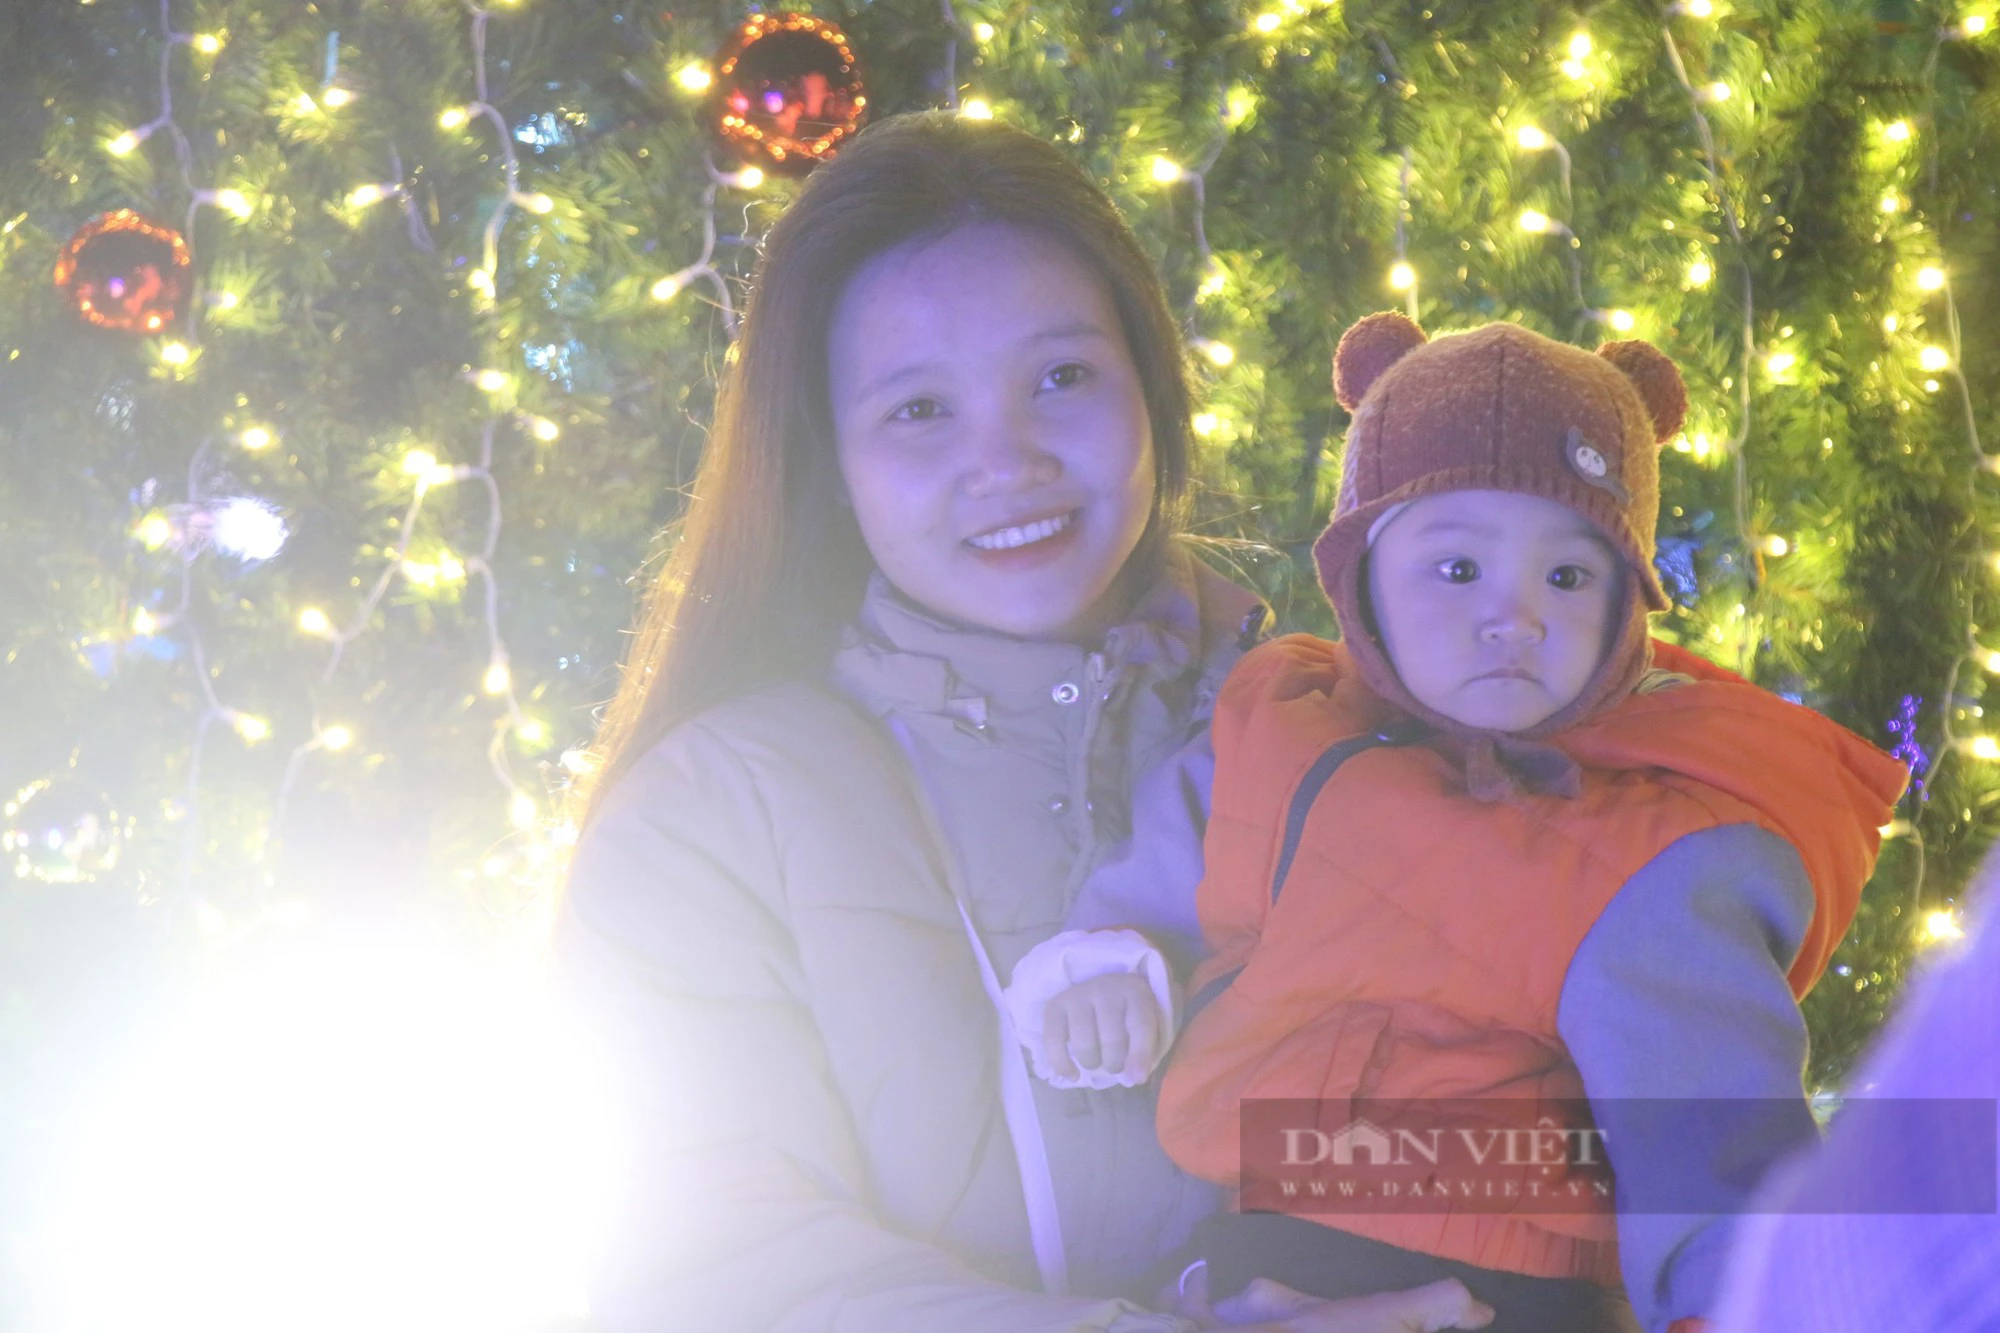 Thời tiết đẹp, người dân Đà Nẵng đổ về nhà thờ, các điểm vui chơi đón Giáng sinh - Ảnh 6.